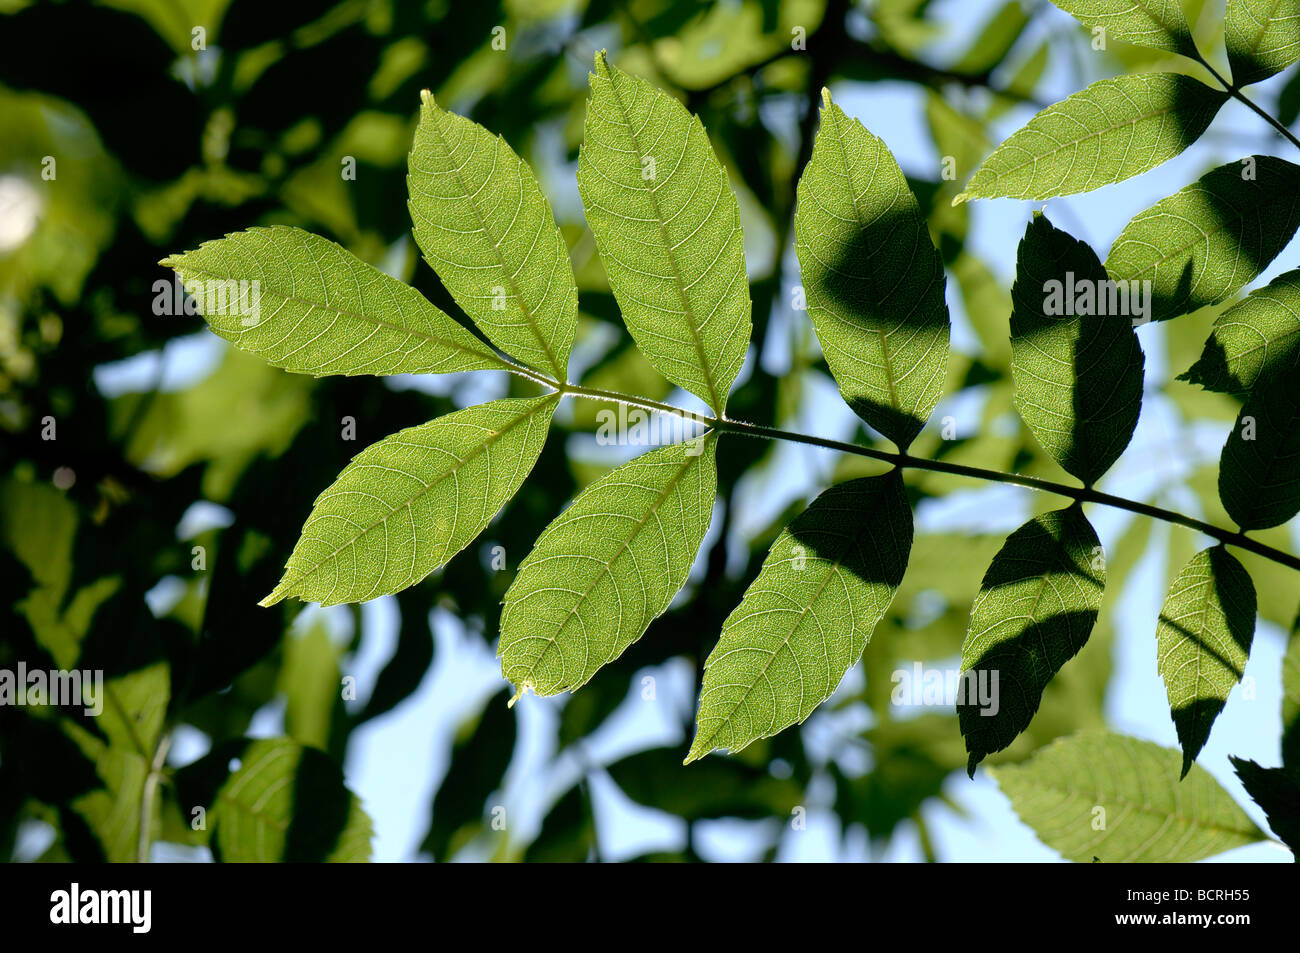 Junge Blätter der Esche Fraxinus Excelsior Hintergrundbeleuchtung durch Sonnenlicht Stockfoto